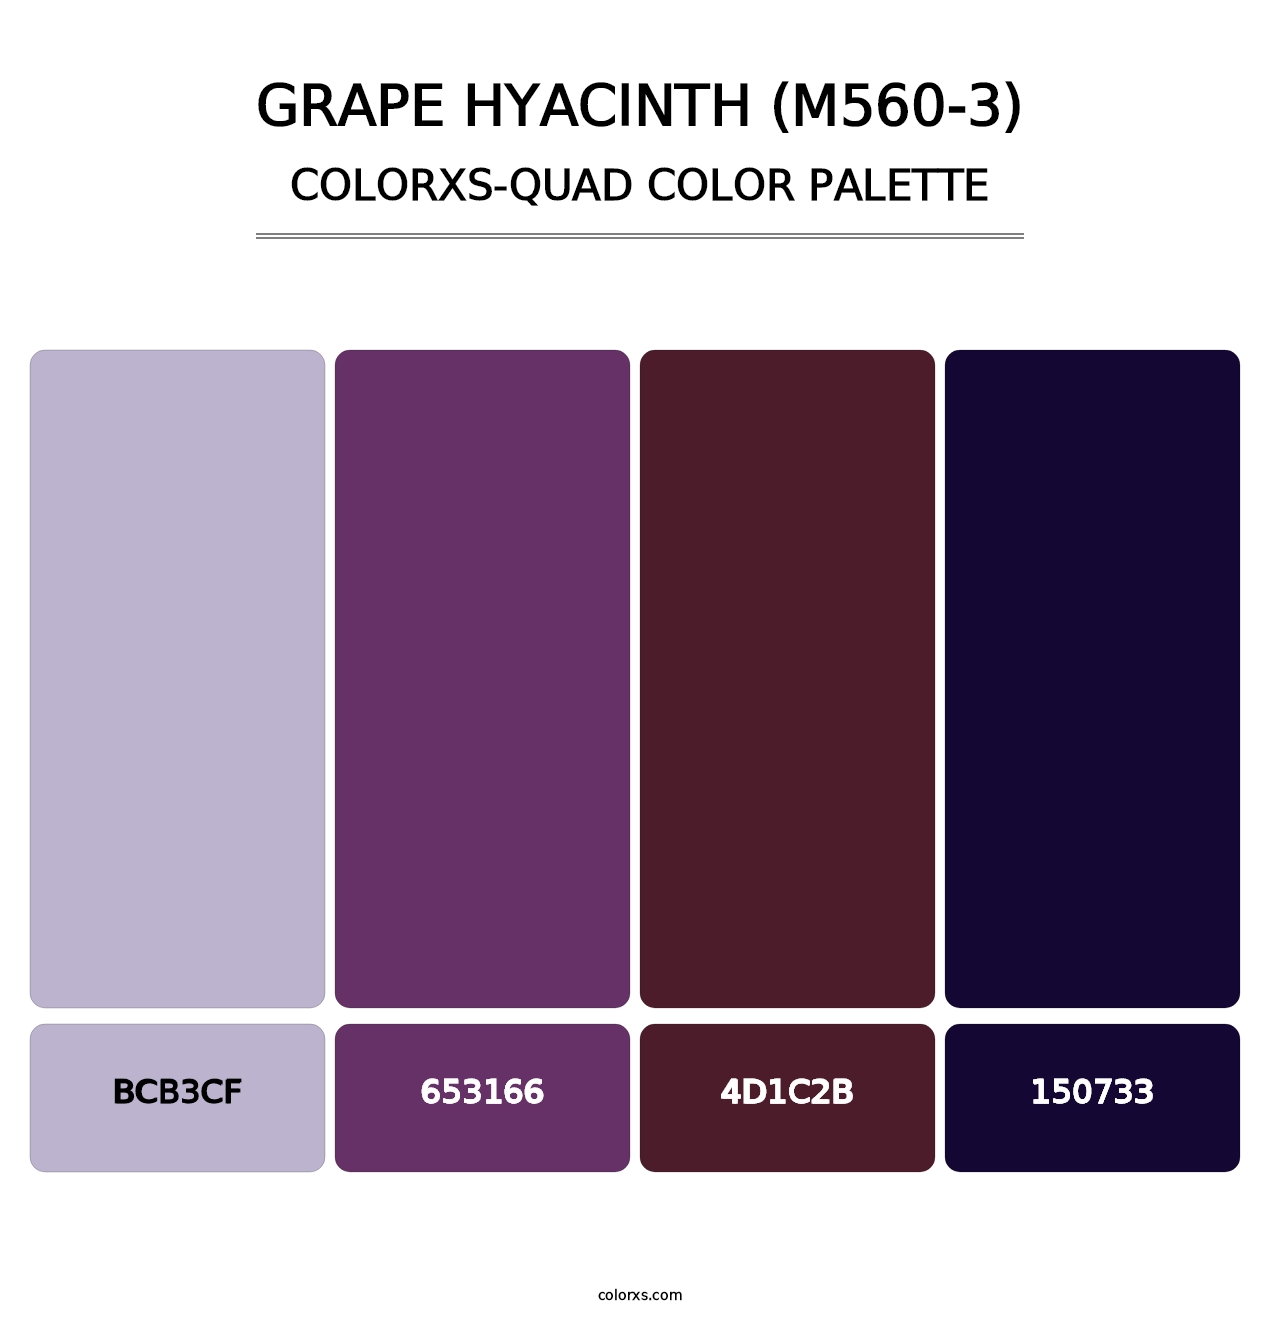 Grape Hyacinth (M560-3) - Colorxs Quad Palette